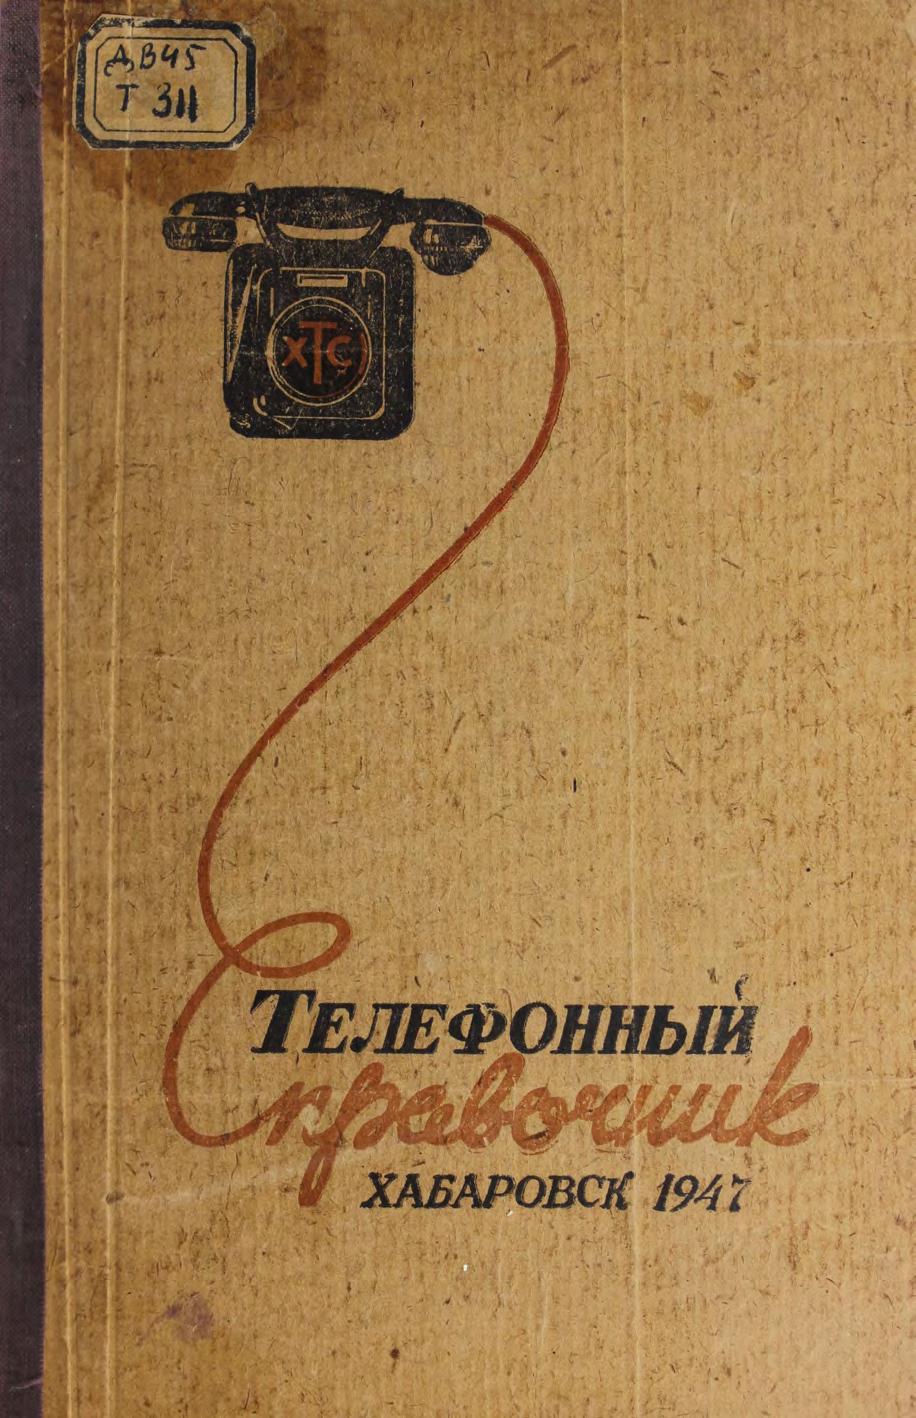 Телефонный справочник г. Хабаровска Хабар. гор. телефон. станция. - Хабаровск, 1947.